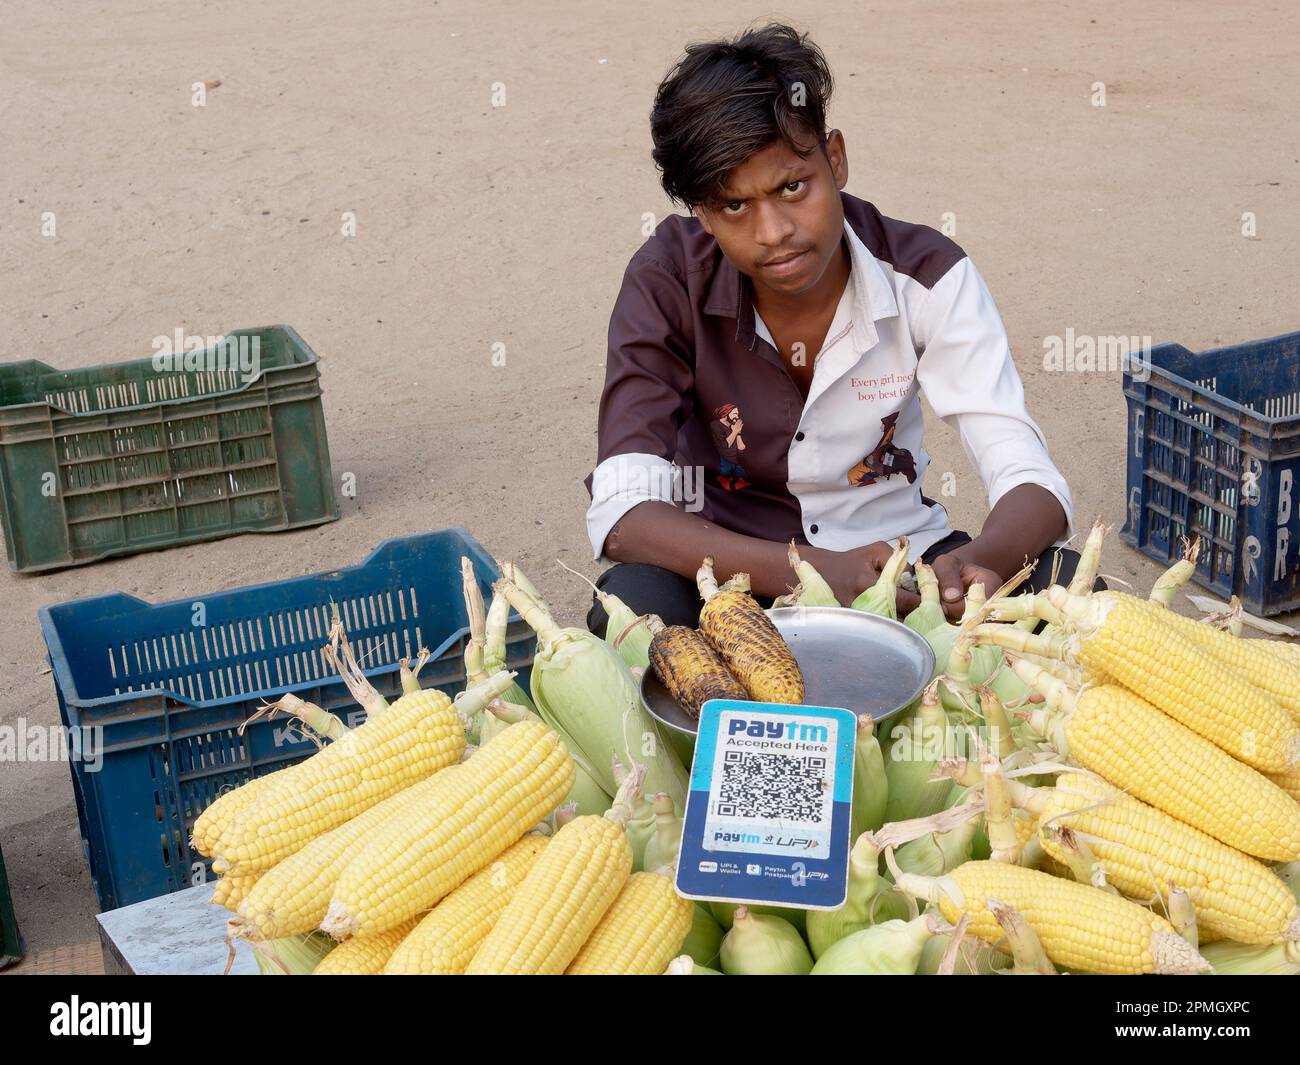 Un jeune Indien qui vend du maïs rôti à Chowpatty Beach, Mumbai, Inde, offre le paiement numérique (Paytm) via le code QR Banque D'Images